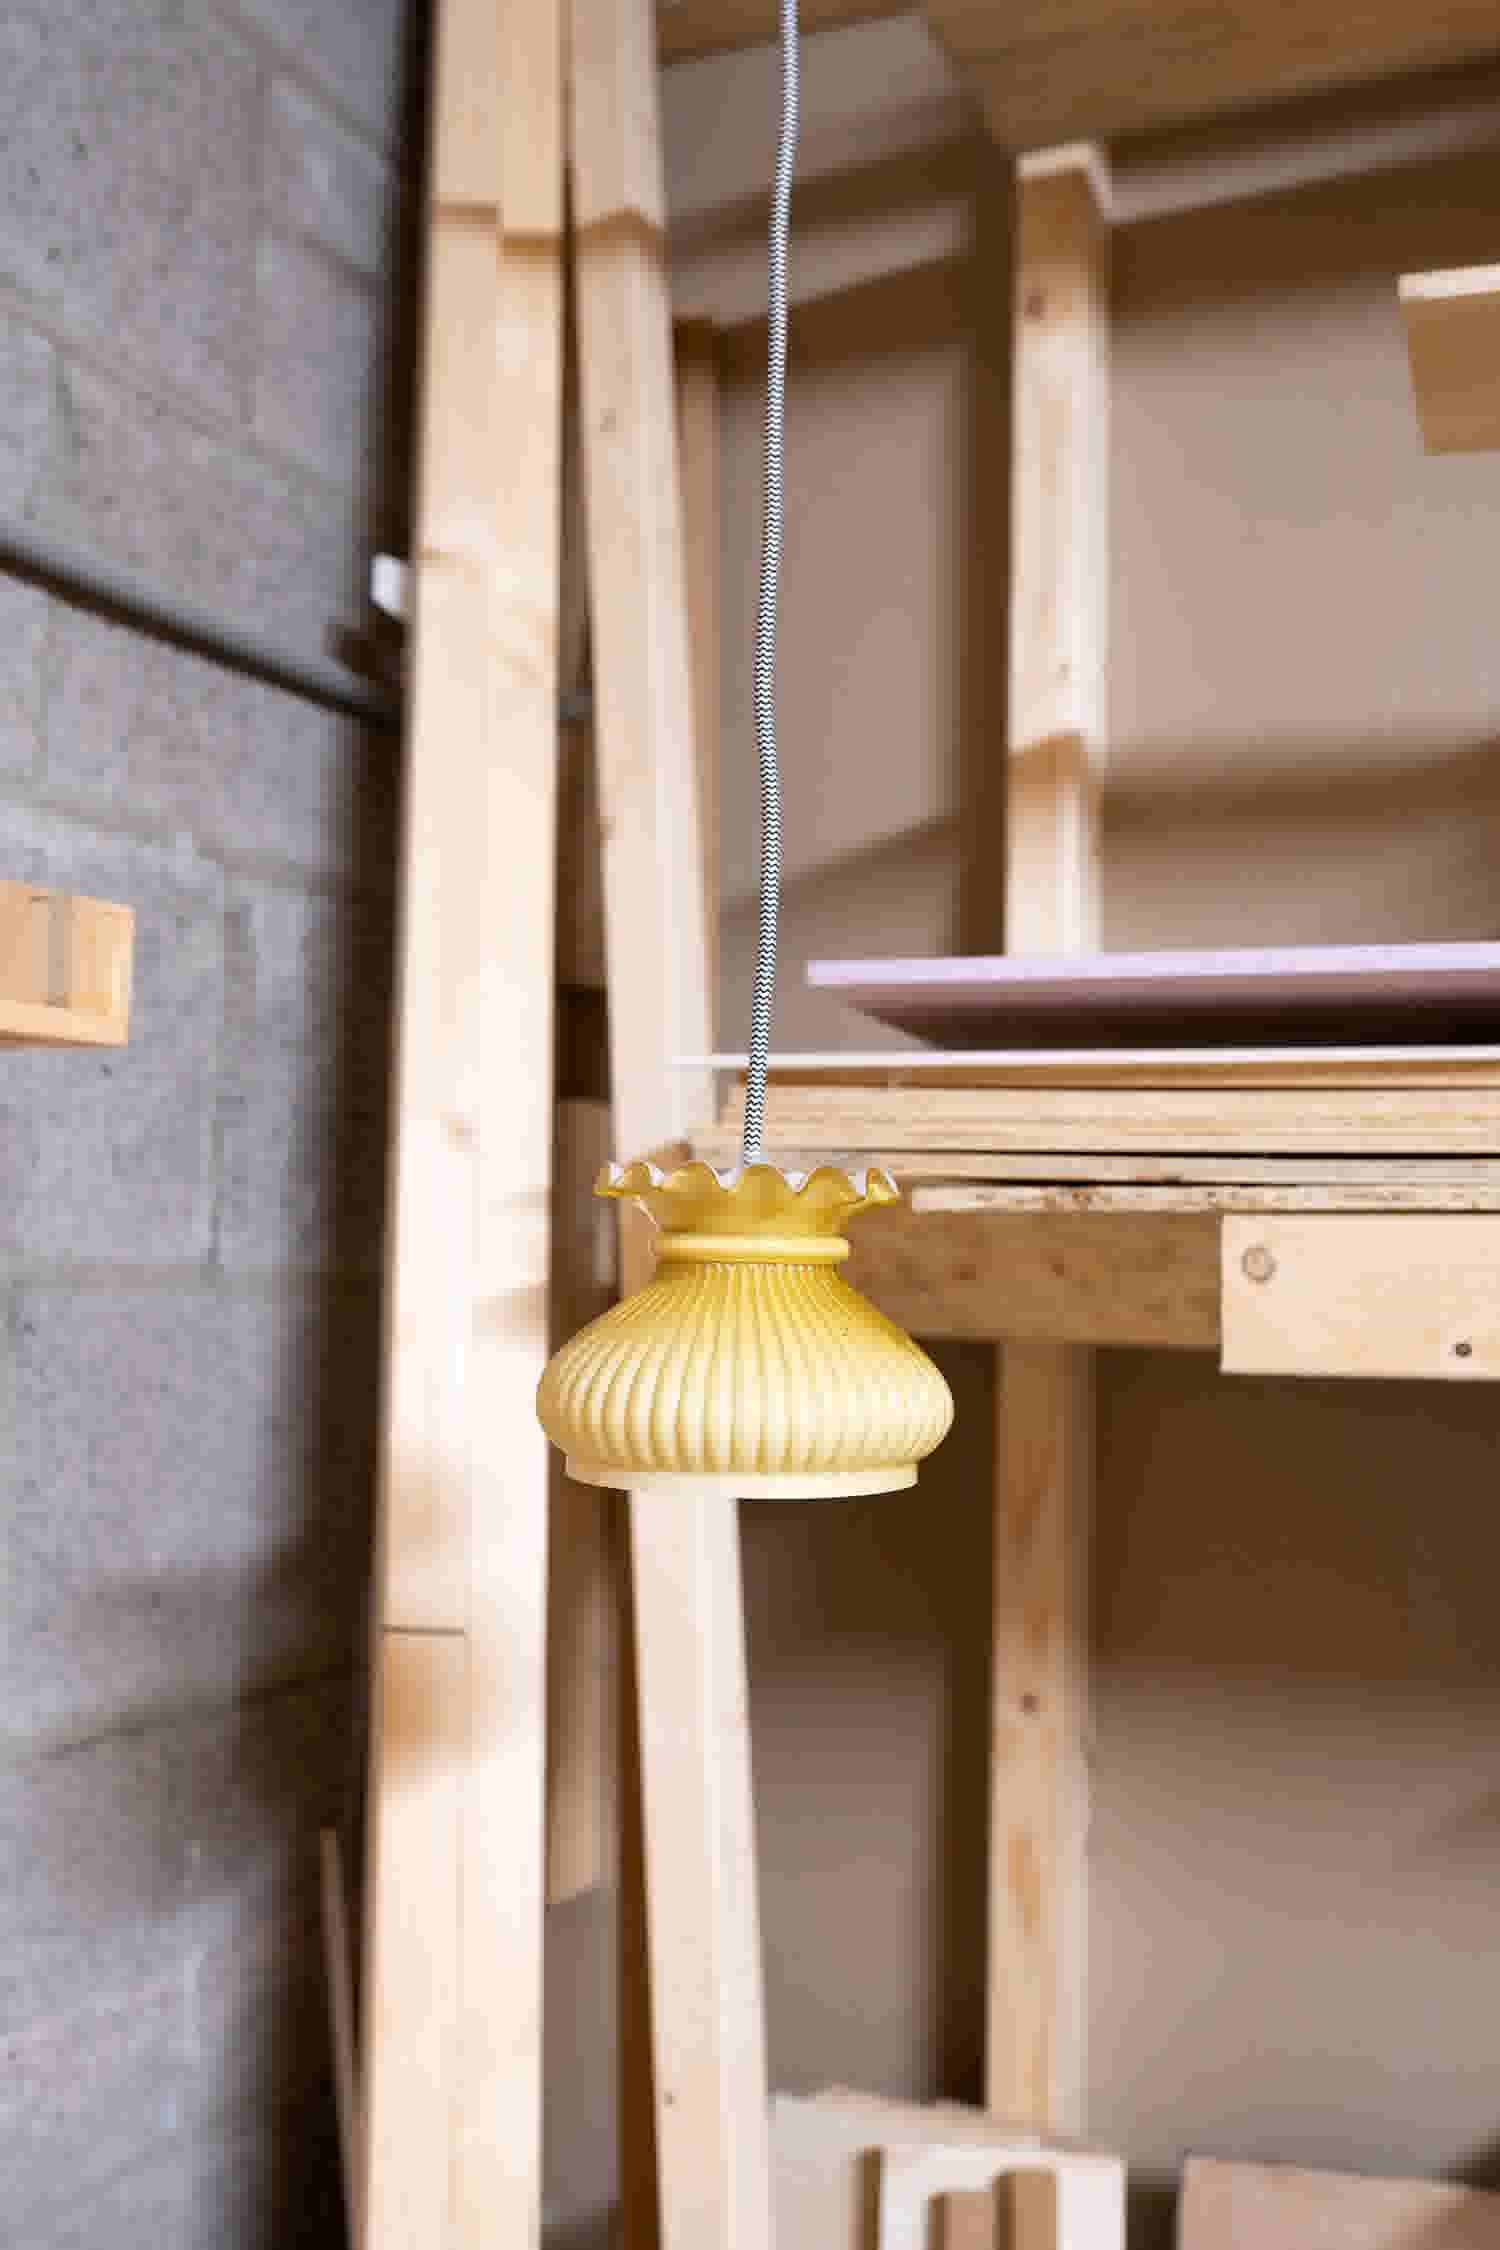 Druppelen Echter hangen KARWEI | DIY hanglamp maken met glazen kapjes